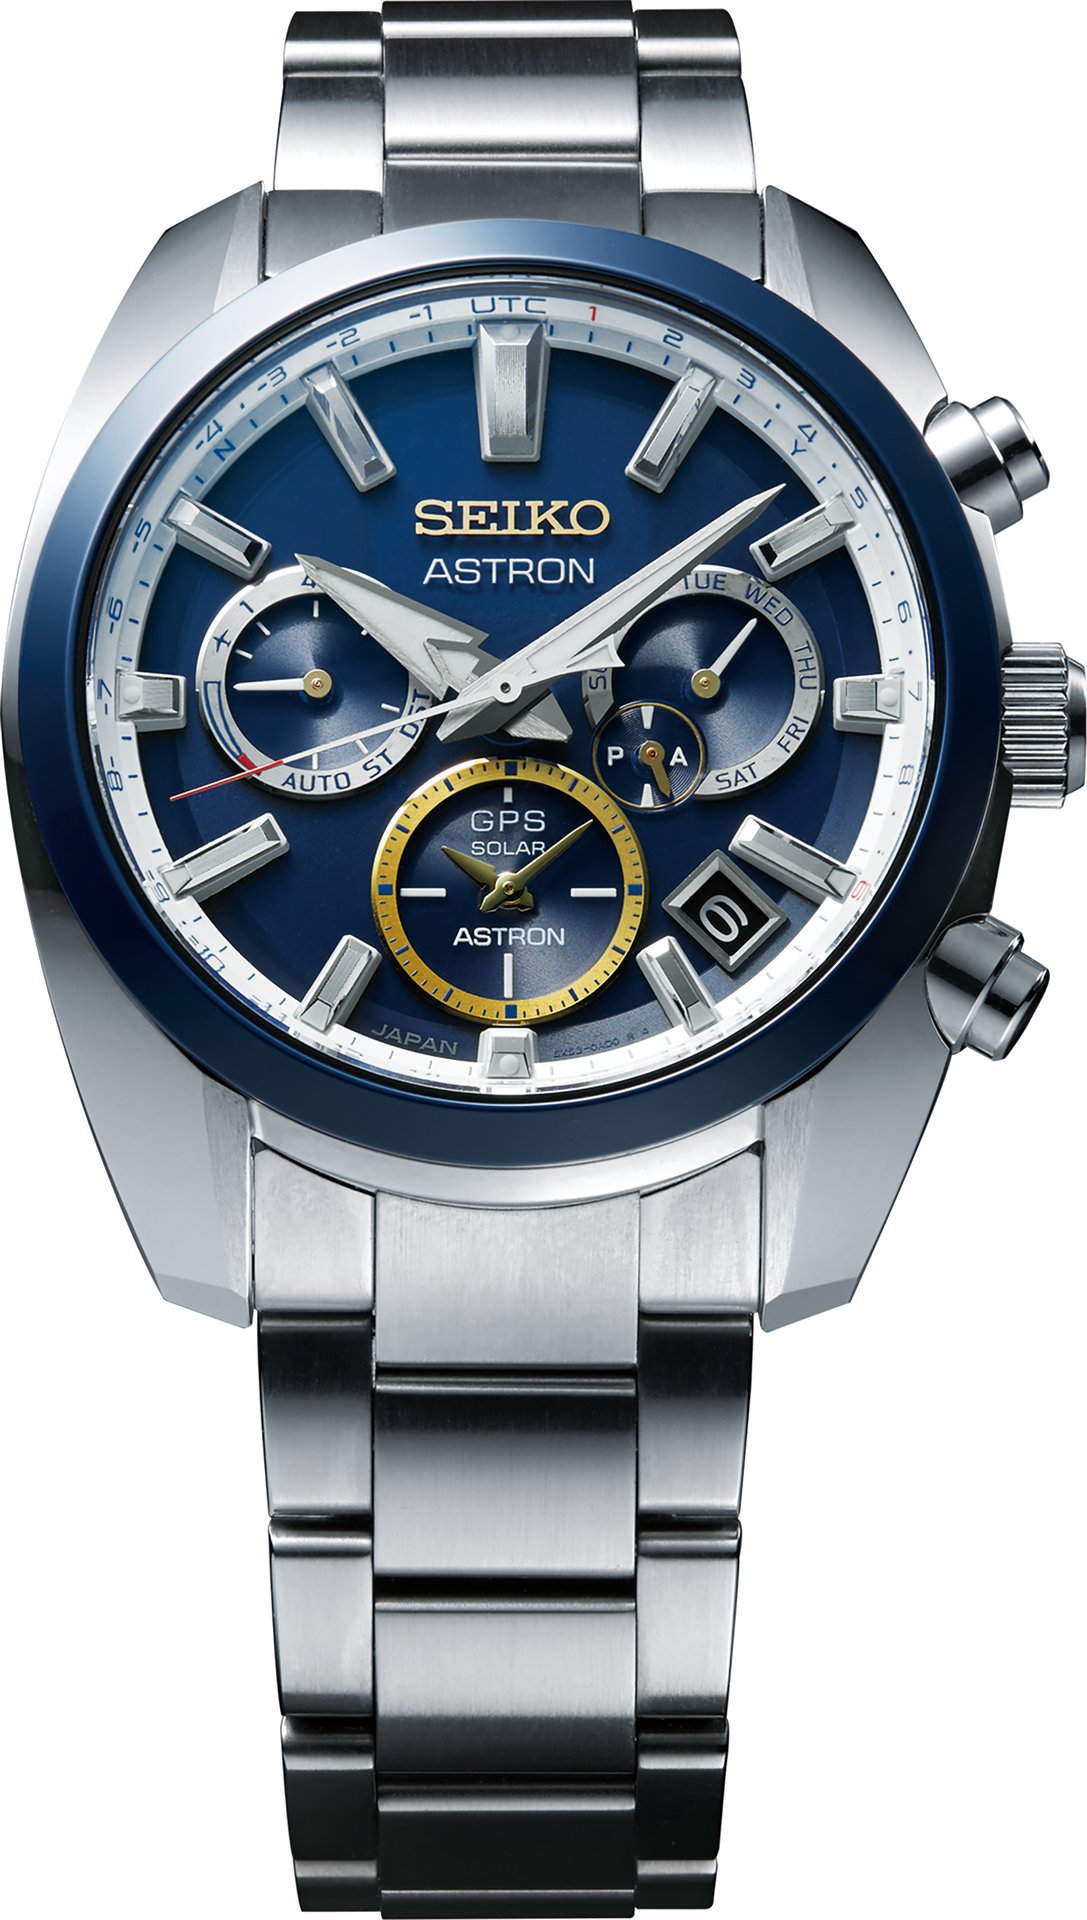 Seiko Astron GPS Solar Novak Djokovic 2020 Limited Edition - Watch I Love